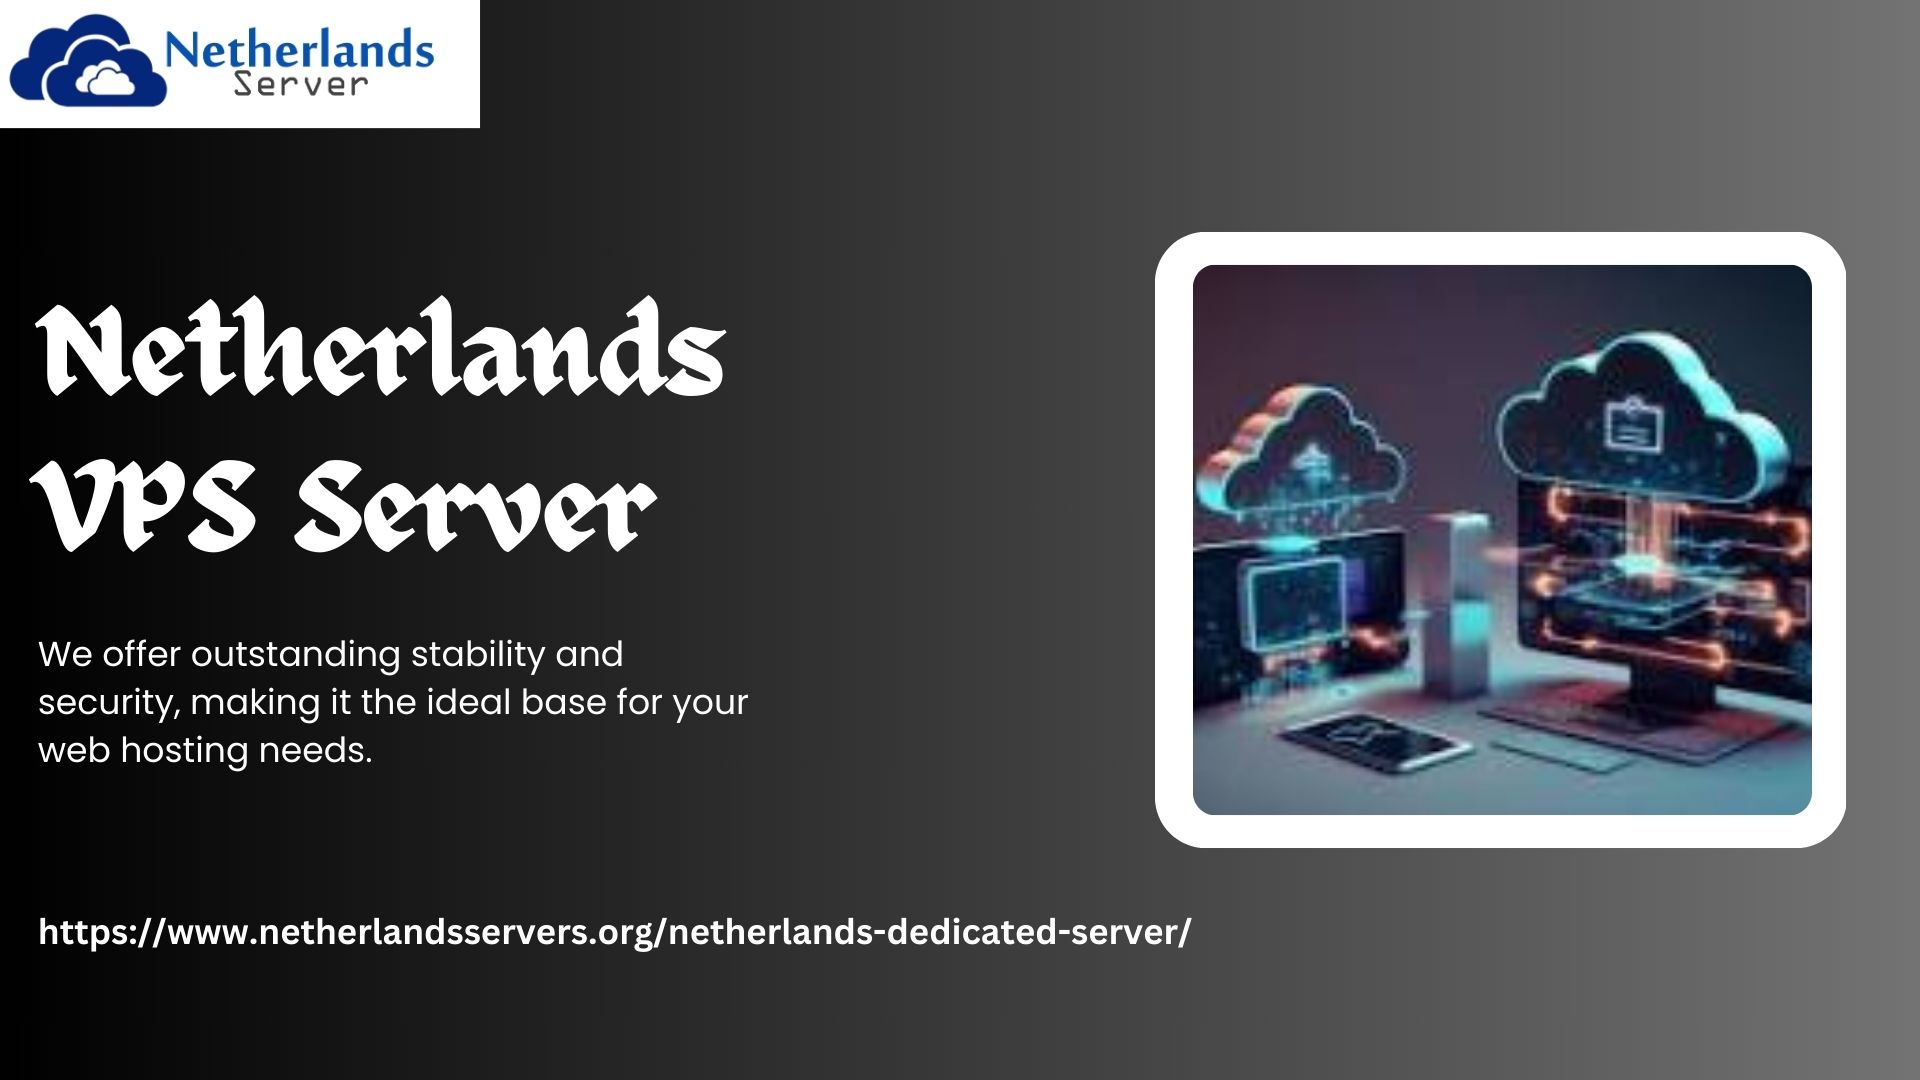 Netherlands VPS Server